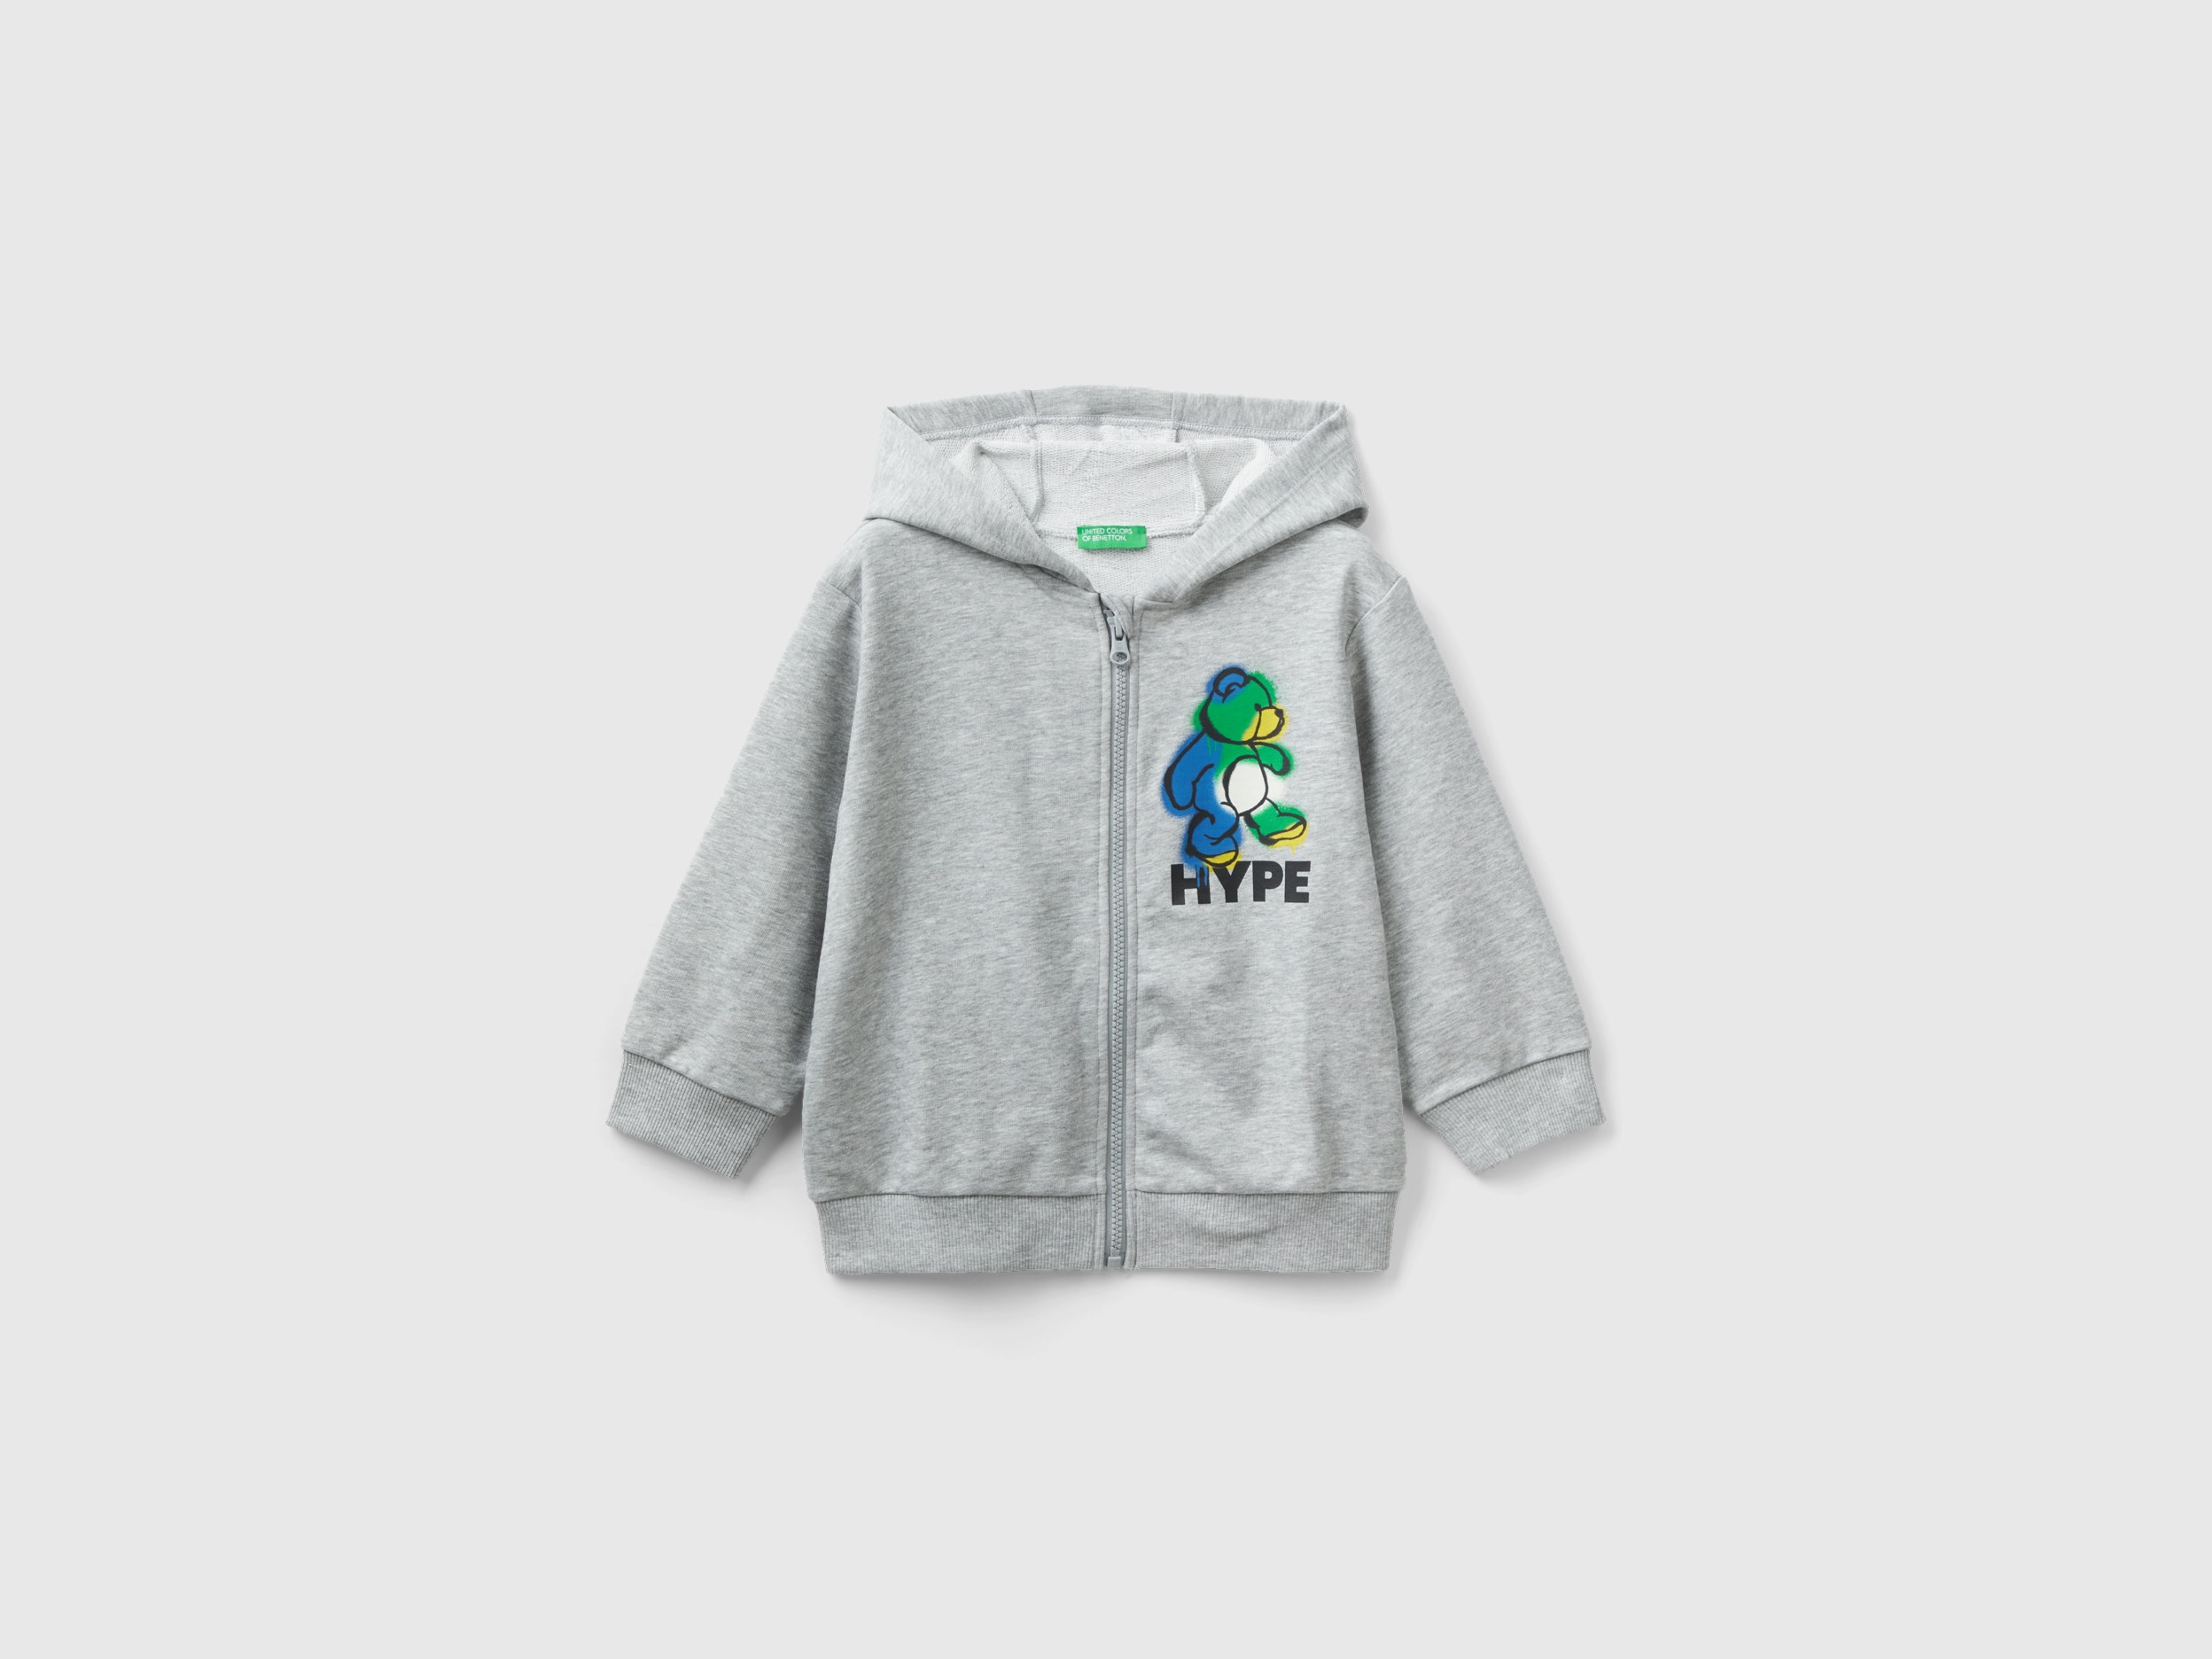 Benetton, Oversize Sweatshirt With Hood, size 3-4, Light Gray, Kids